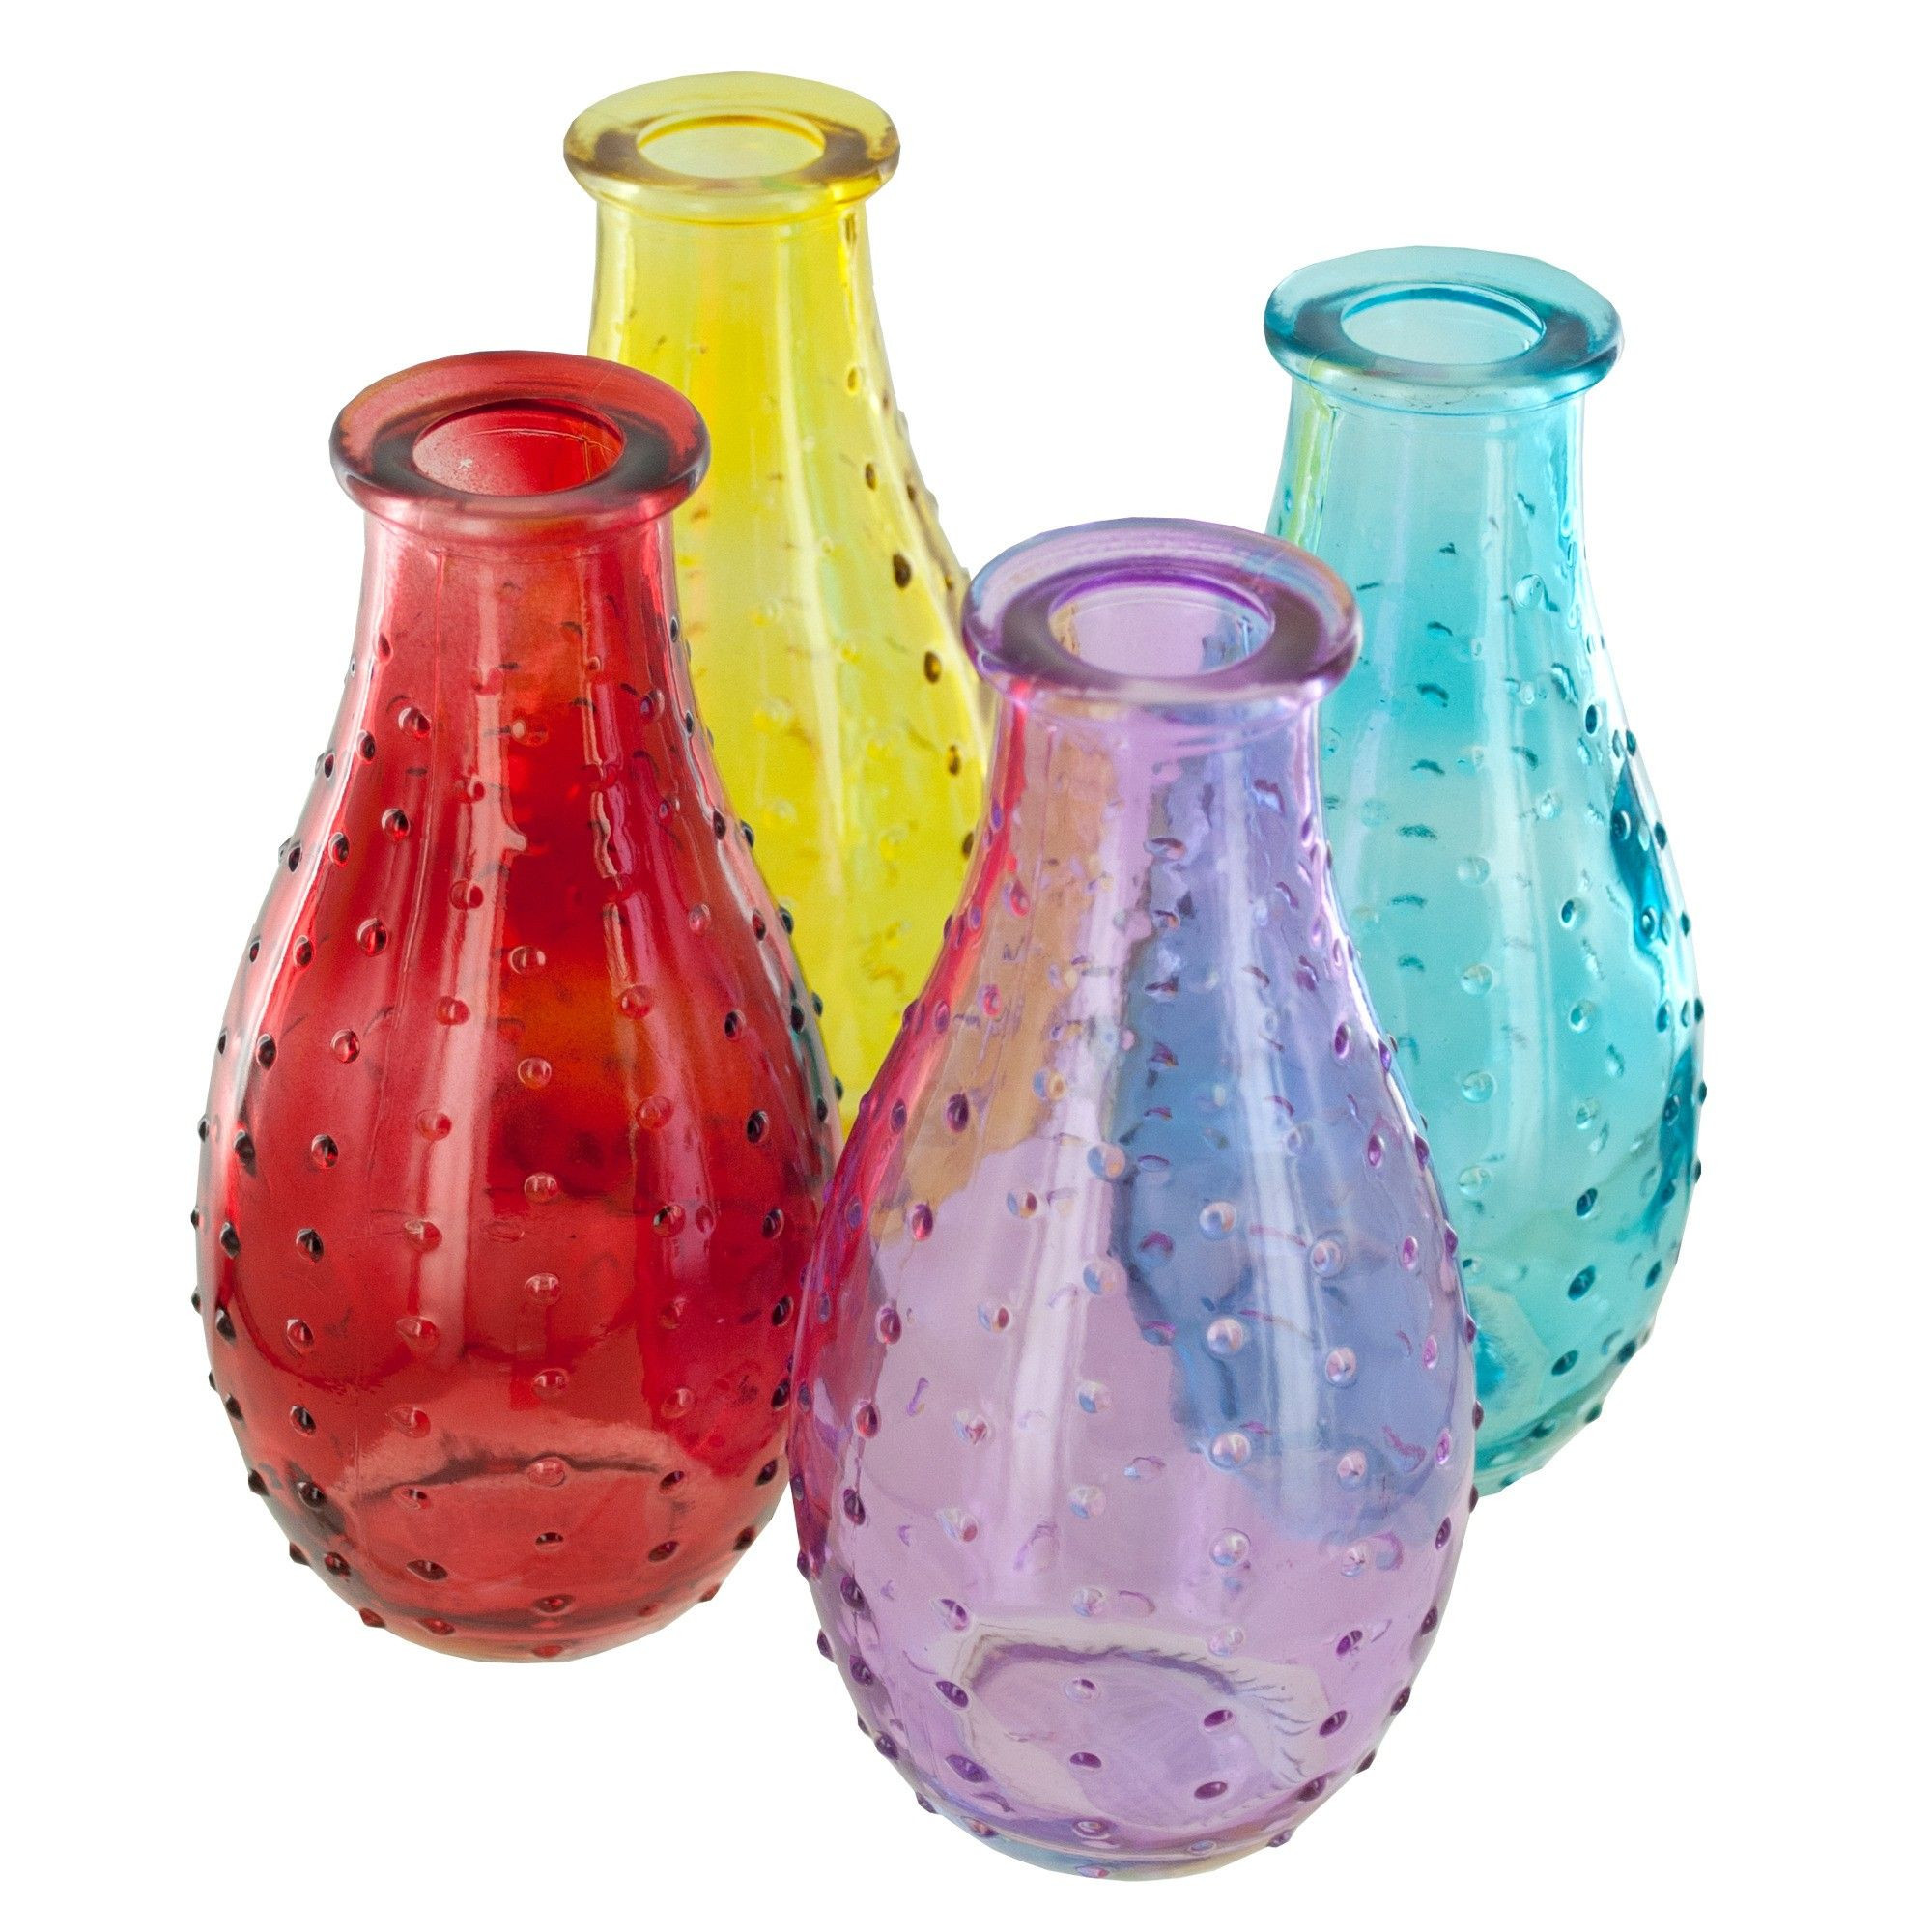 glass cylinder vases bulk 24 of wholesale dot texture glass bottle vase bulk case of 24 rehersal intended for wholesale dot texture glass bottle vase bulk case of 24